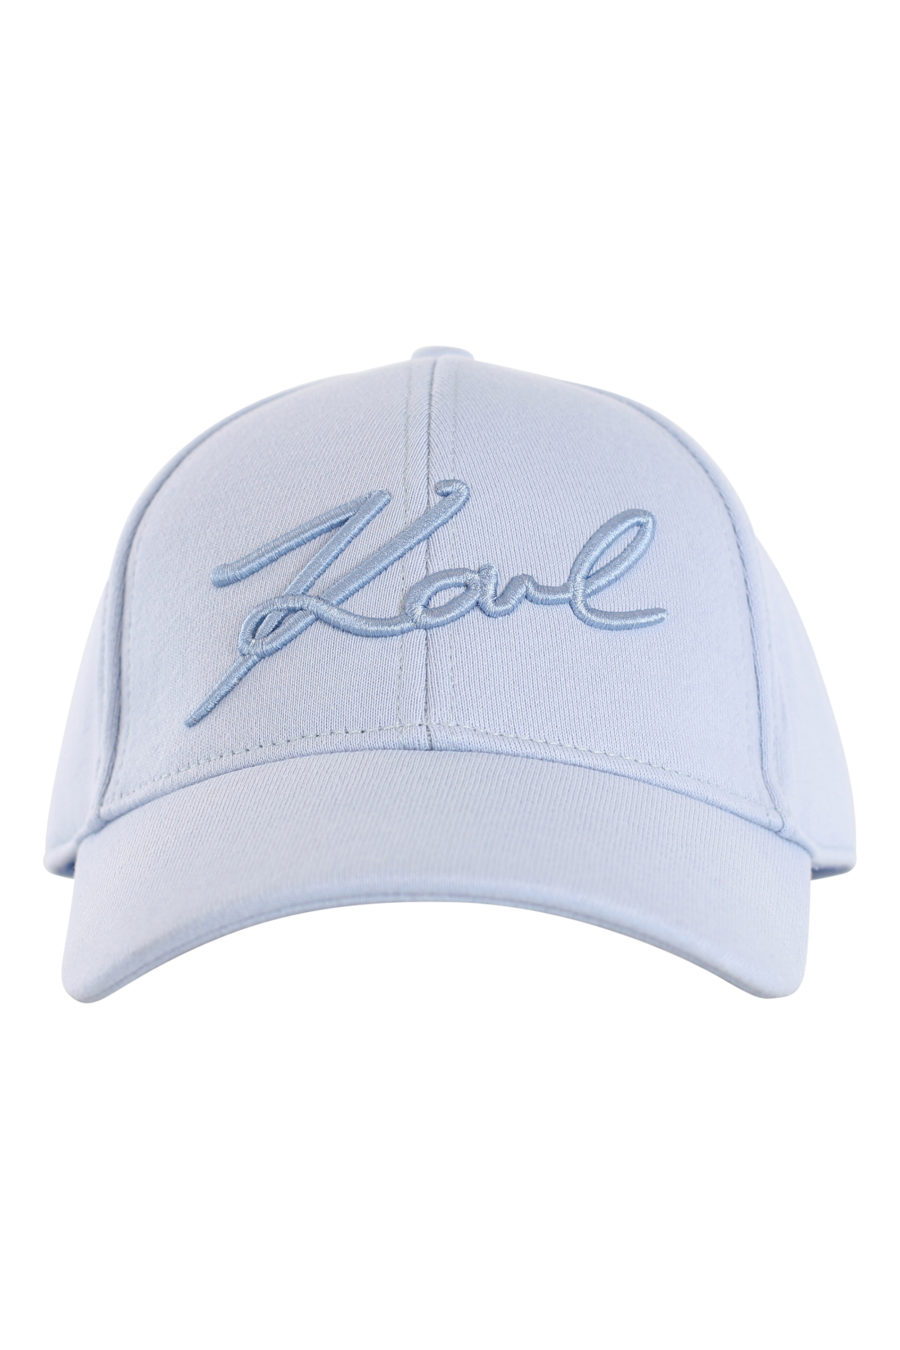 Gorra azul con logo bordado - IMG 0162